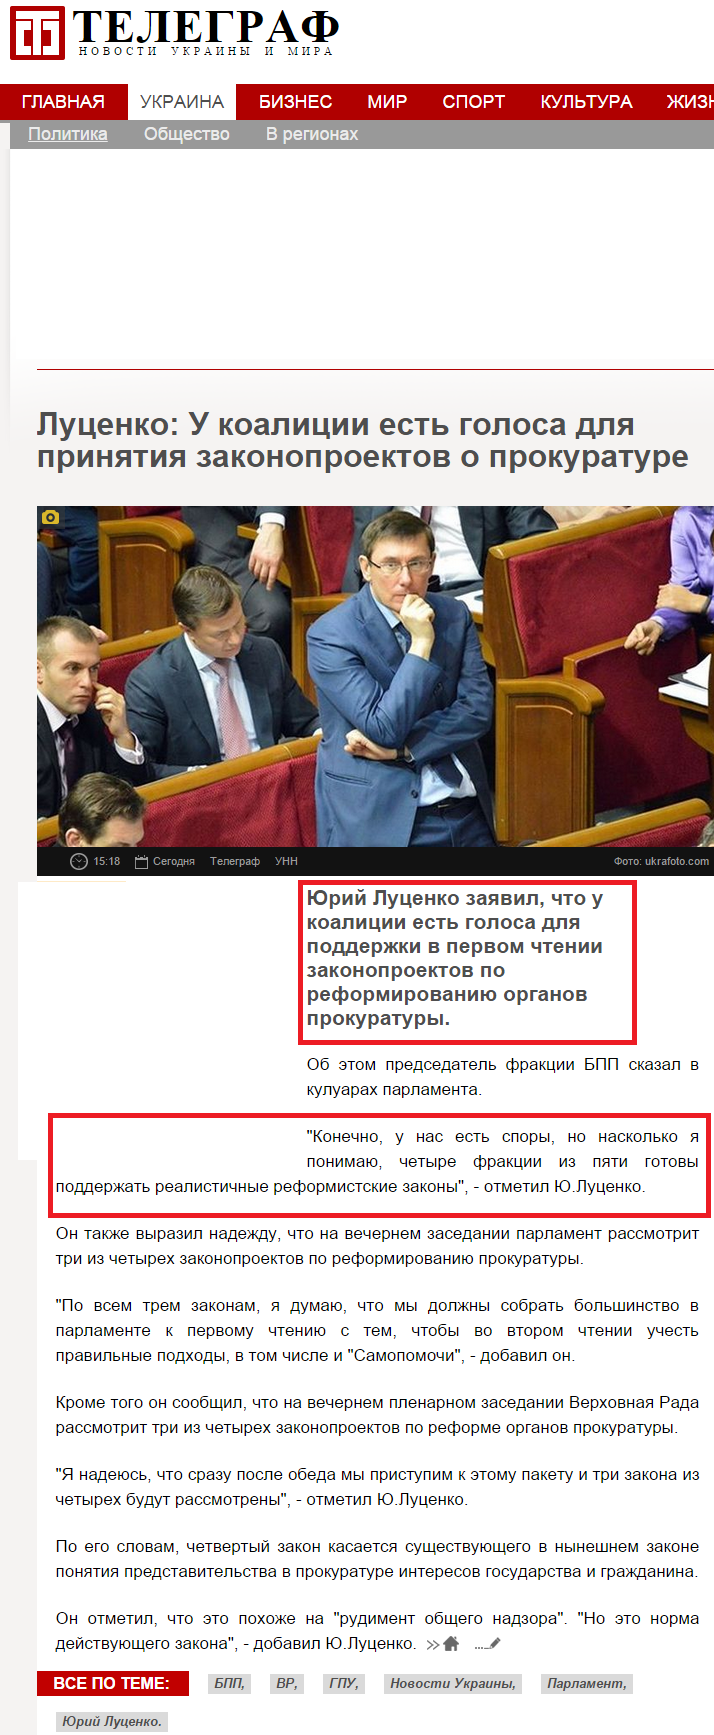 http://telegraf.com.ua/ukraina/politika/1852786-lutsenko-u-koalitsii-est-golosa-dlya-prinyatiya-zakonoproektov-o-prokurature.html